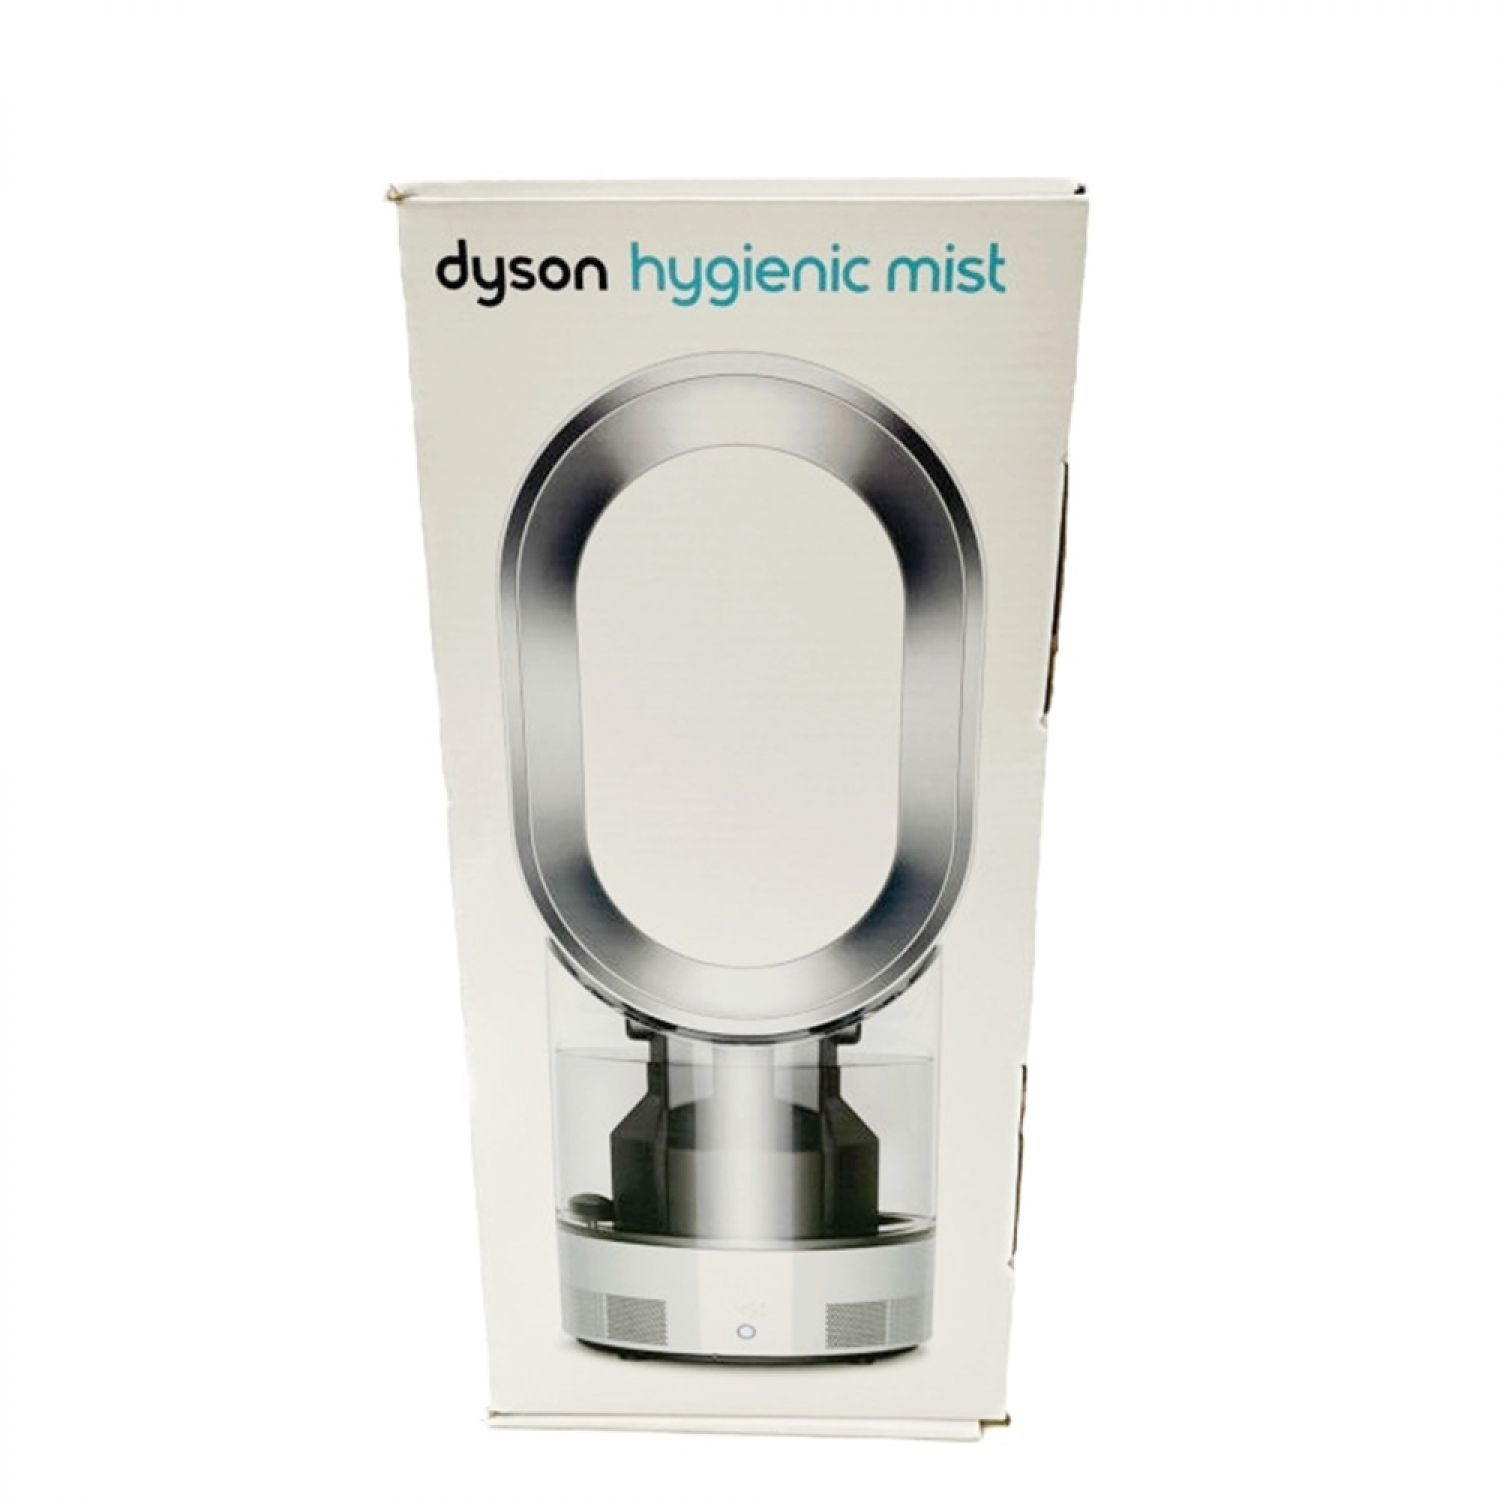 ダイソン 加湿器 MF01 dyson hygienic mist 未使用品